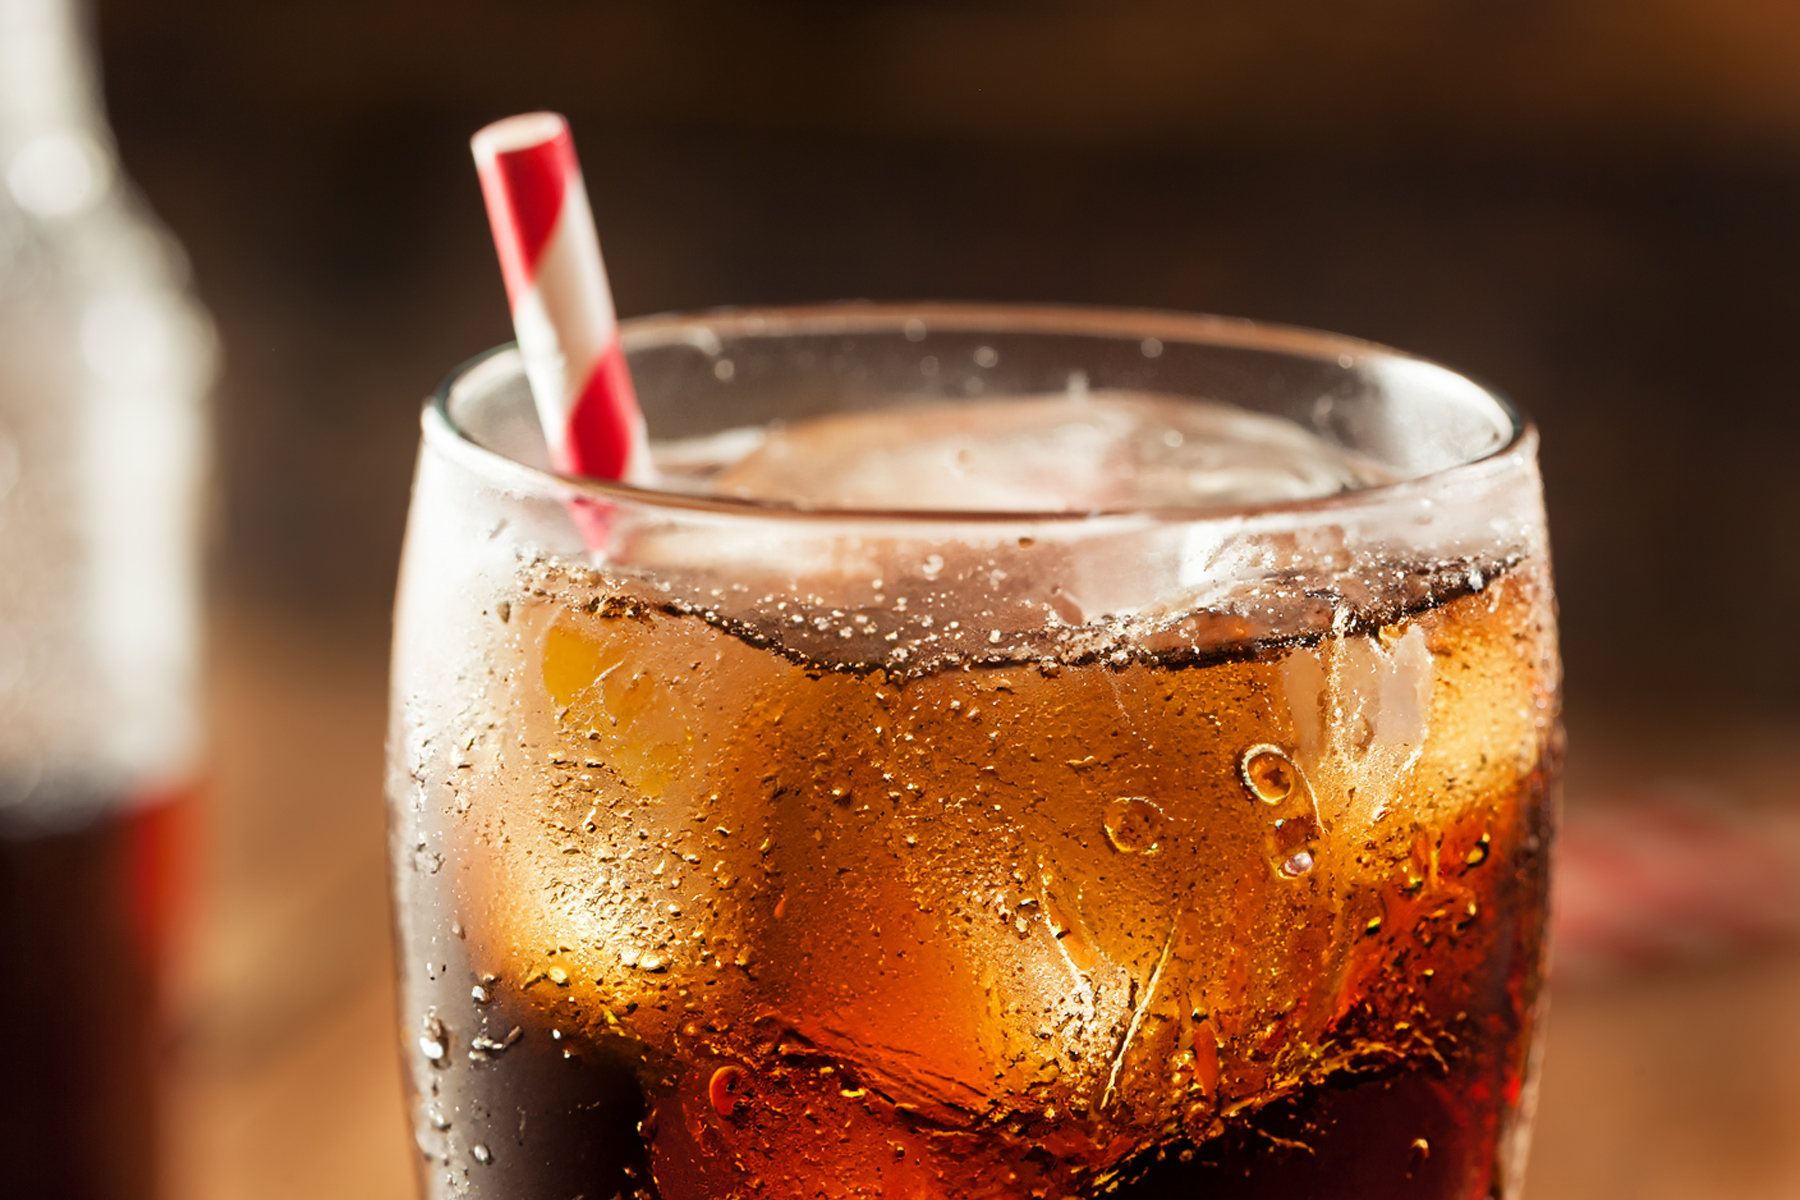 soda-with-a-striped-straw